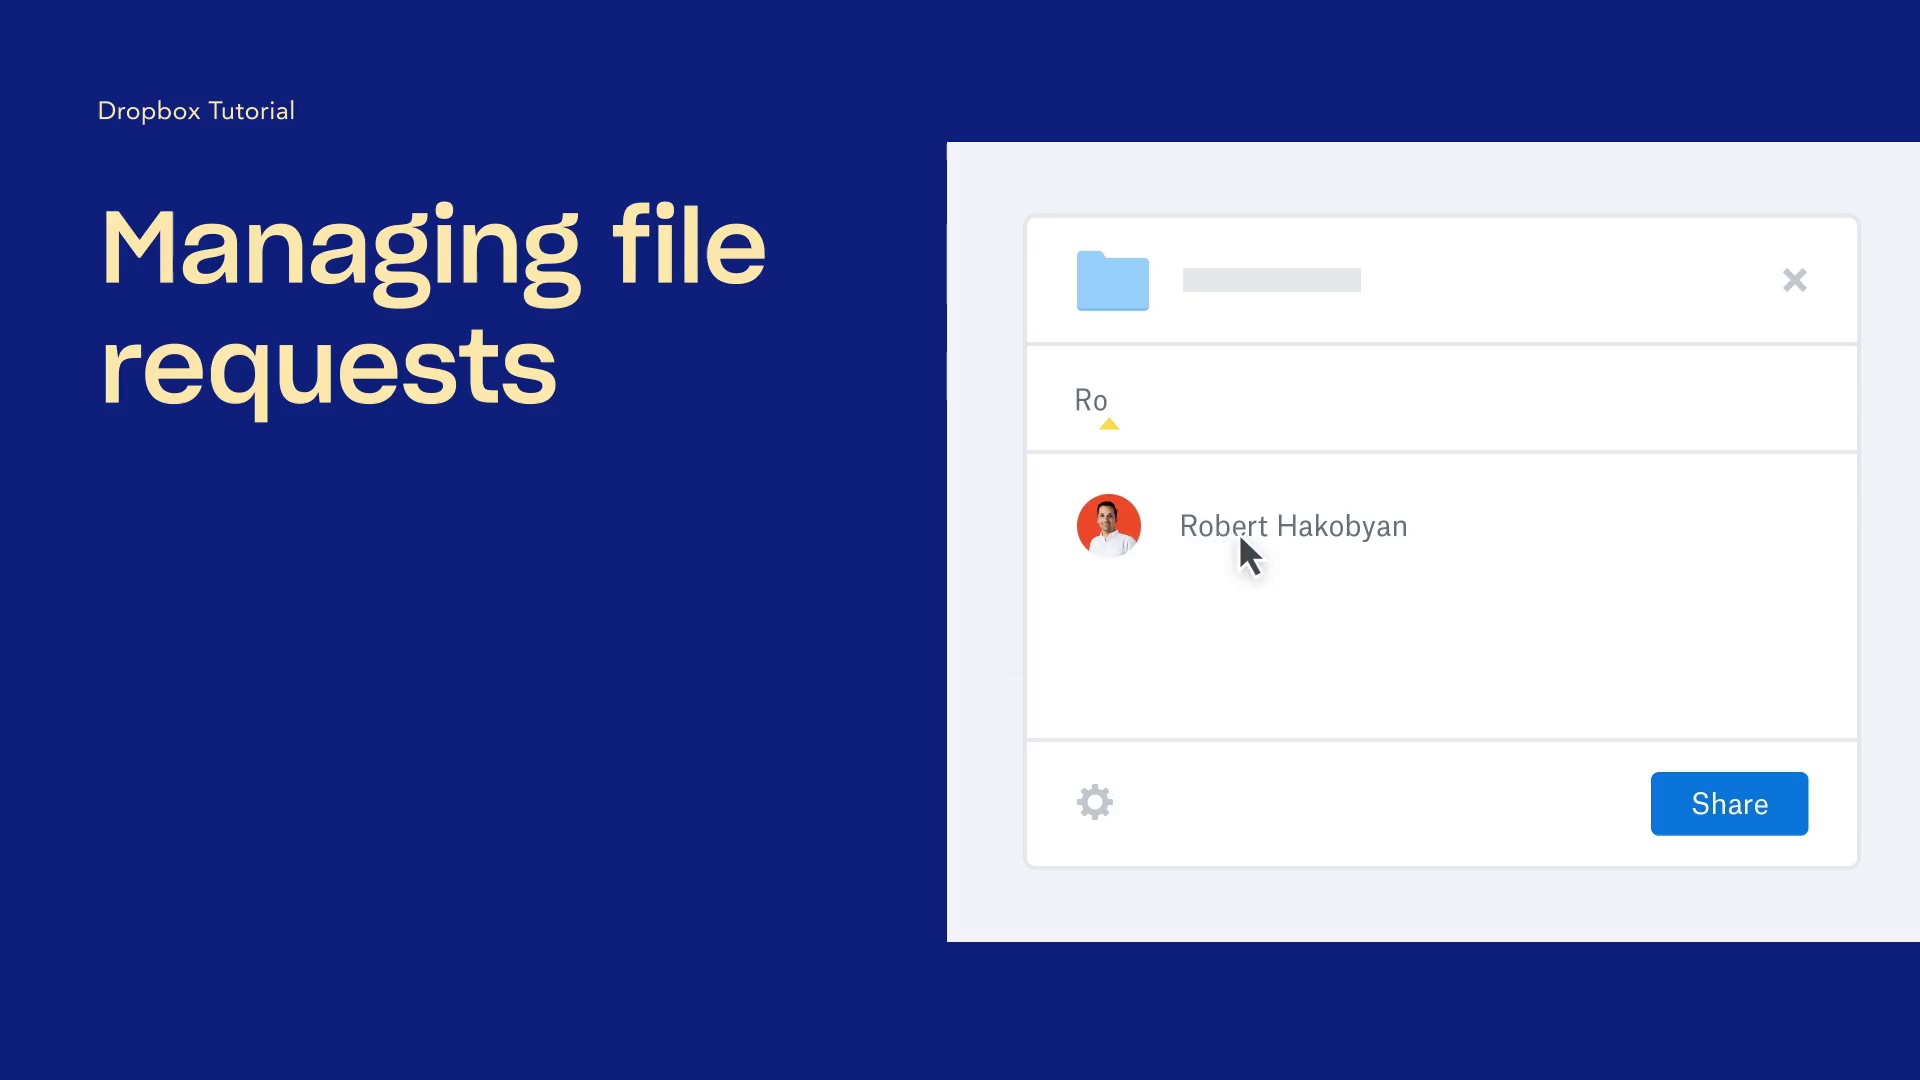 Managing file requests